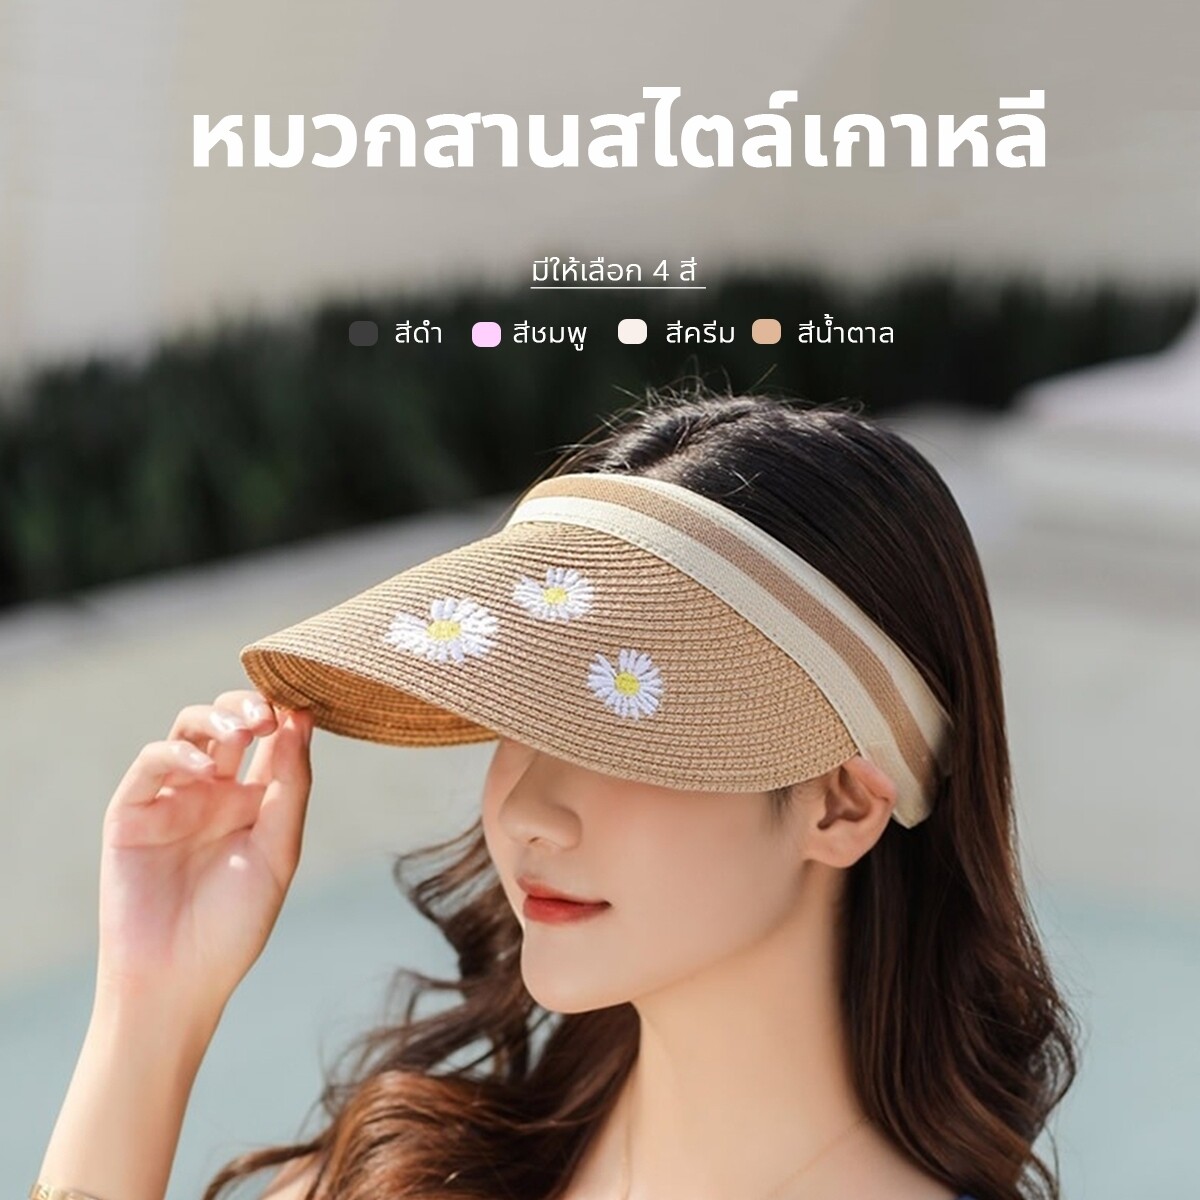 หมวกสานครึ่งหัว หมวก หมวกแฟชั่น หมวกสาน หมวกสานกันแดด สำหรับผู้หญิง หมวกสไตล์เกาหลี